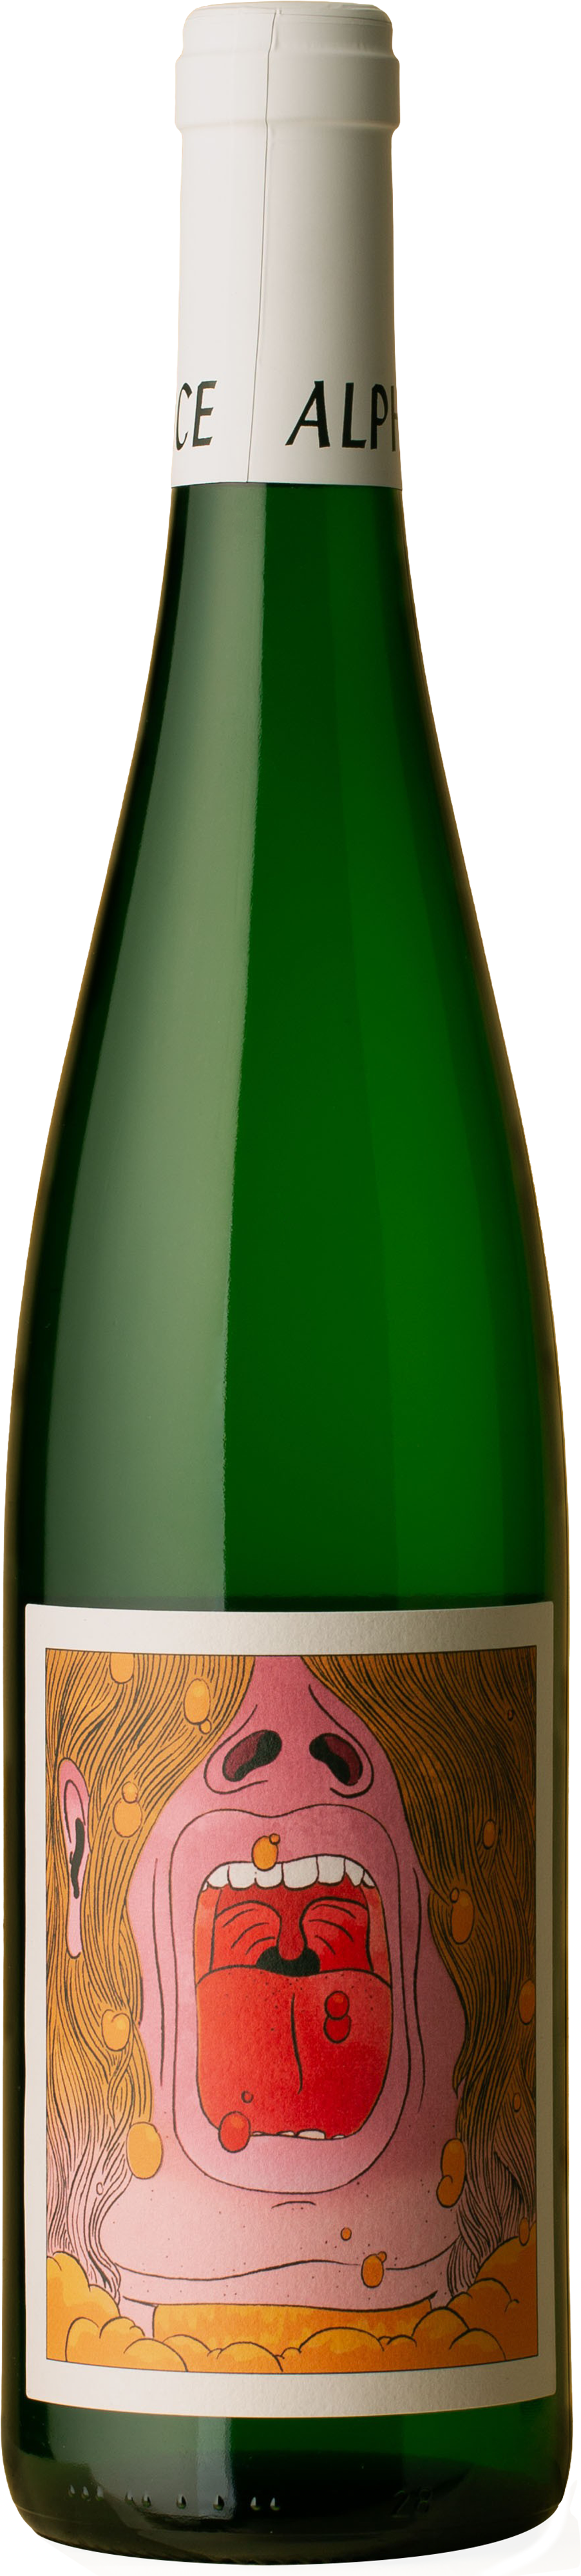 Alpha Box & Dice - Ö Bonoposto Vineyard Grüner Veltliner 2021 White Wine